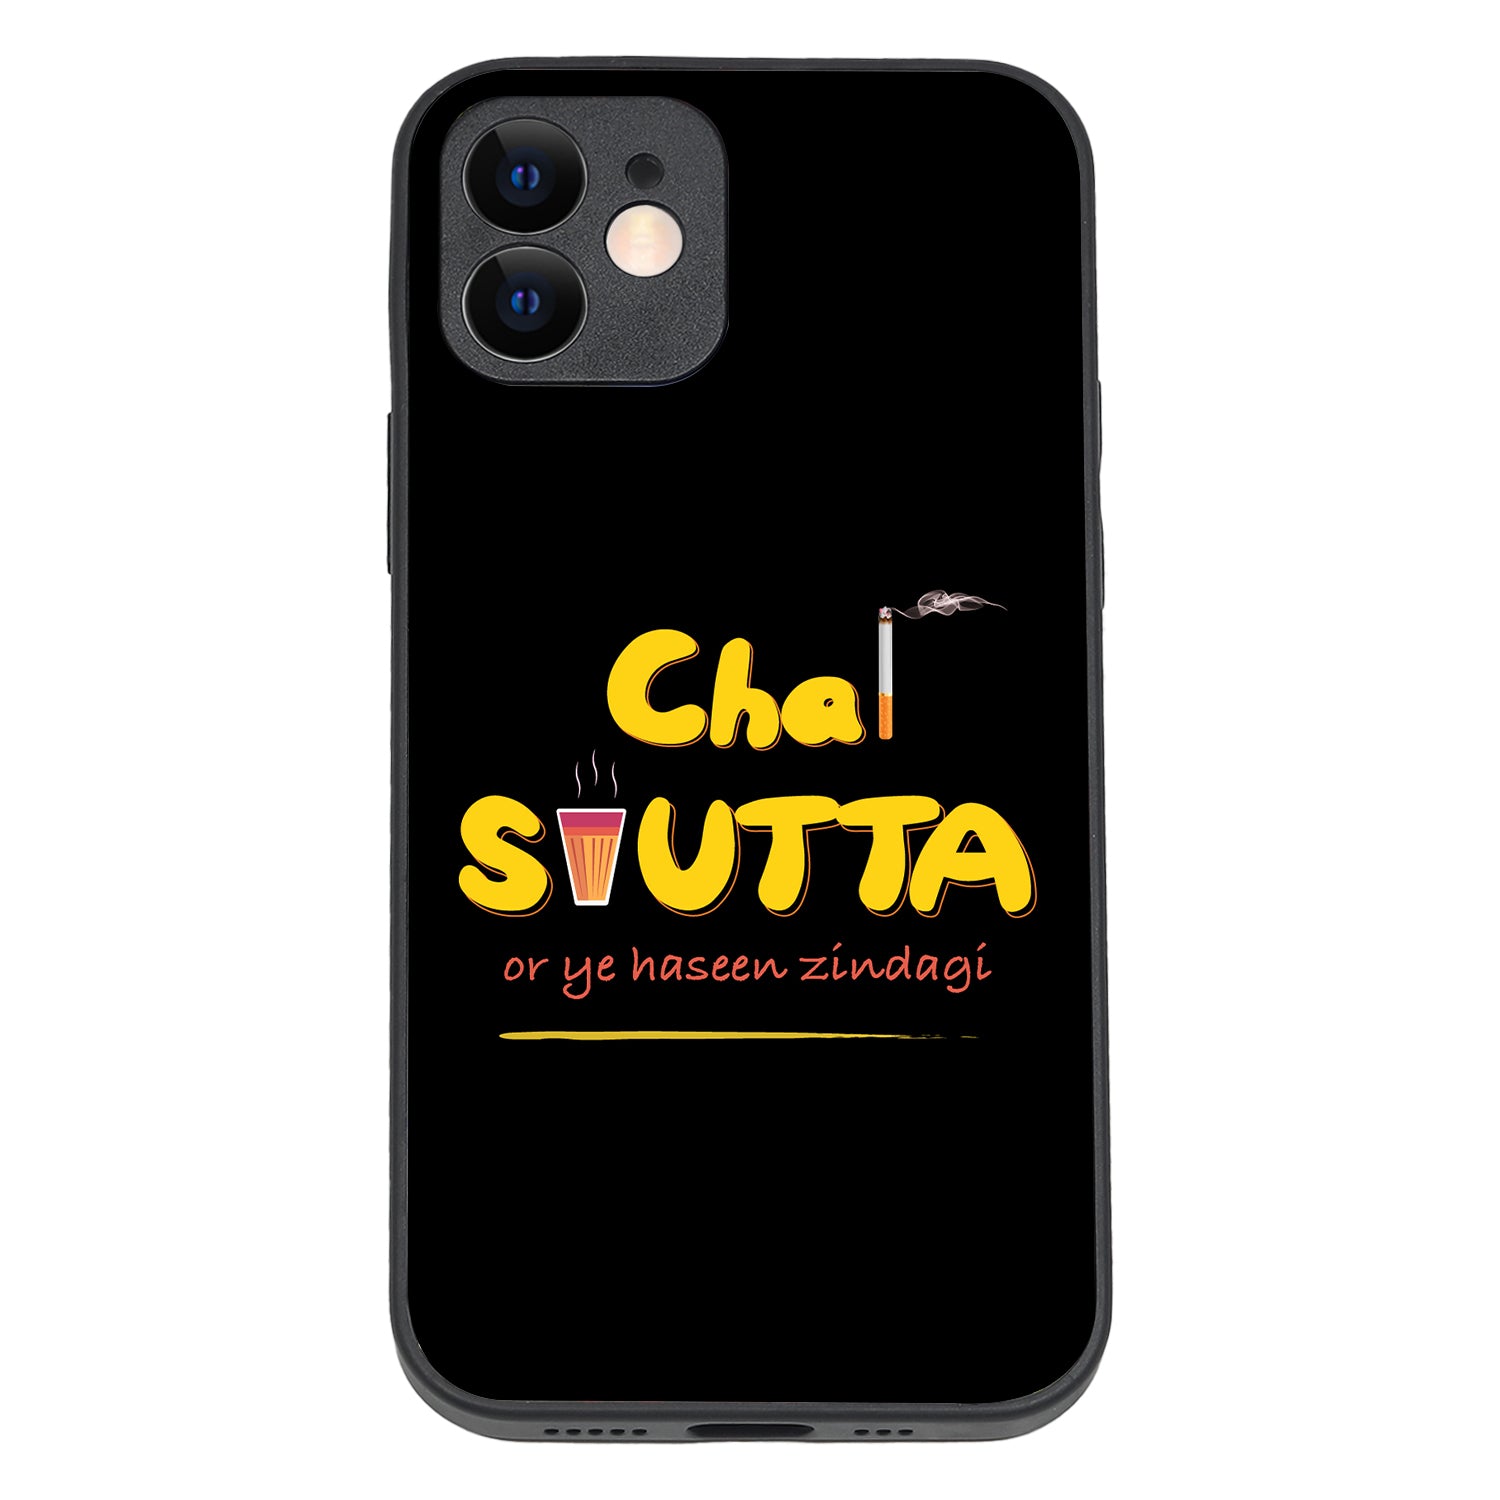 Chai-Sutta Motivational Quotes iPhone 12 Case